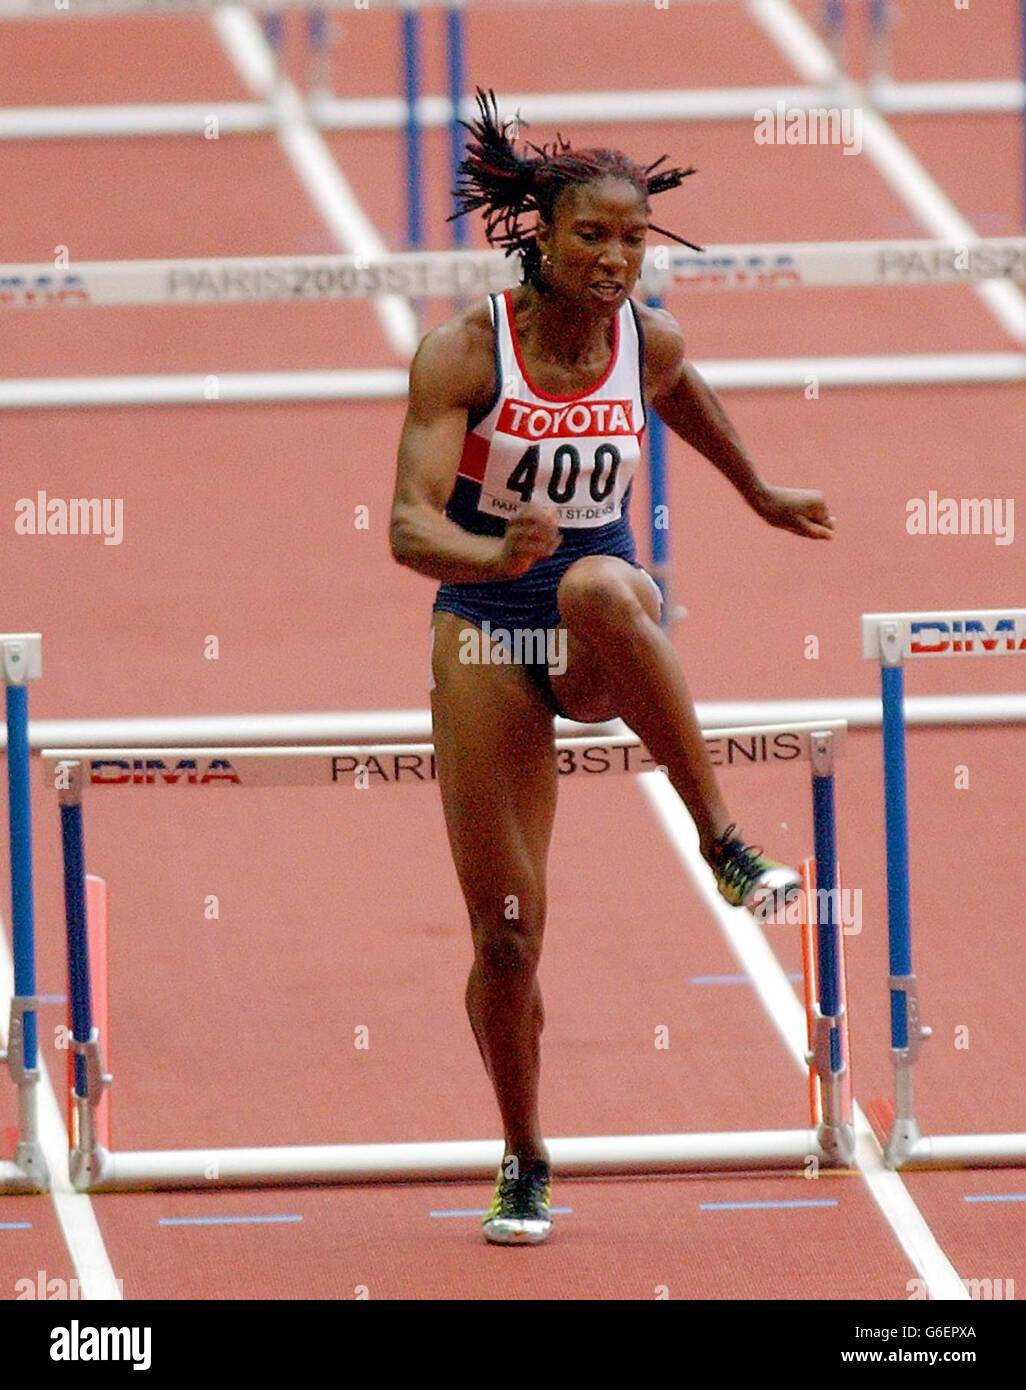 Denise Lewis ha raggiunto l'ultimo ostacolo nella corsa di 100m Hurdles, il primo evento per lei nell'Heptathlon, al World Athletics Championships di Parigi. Foto Stock